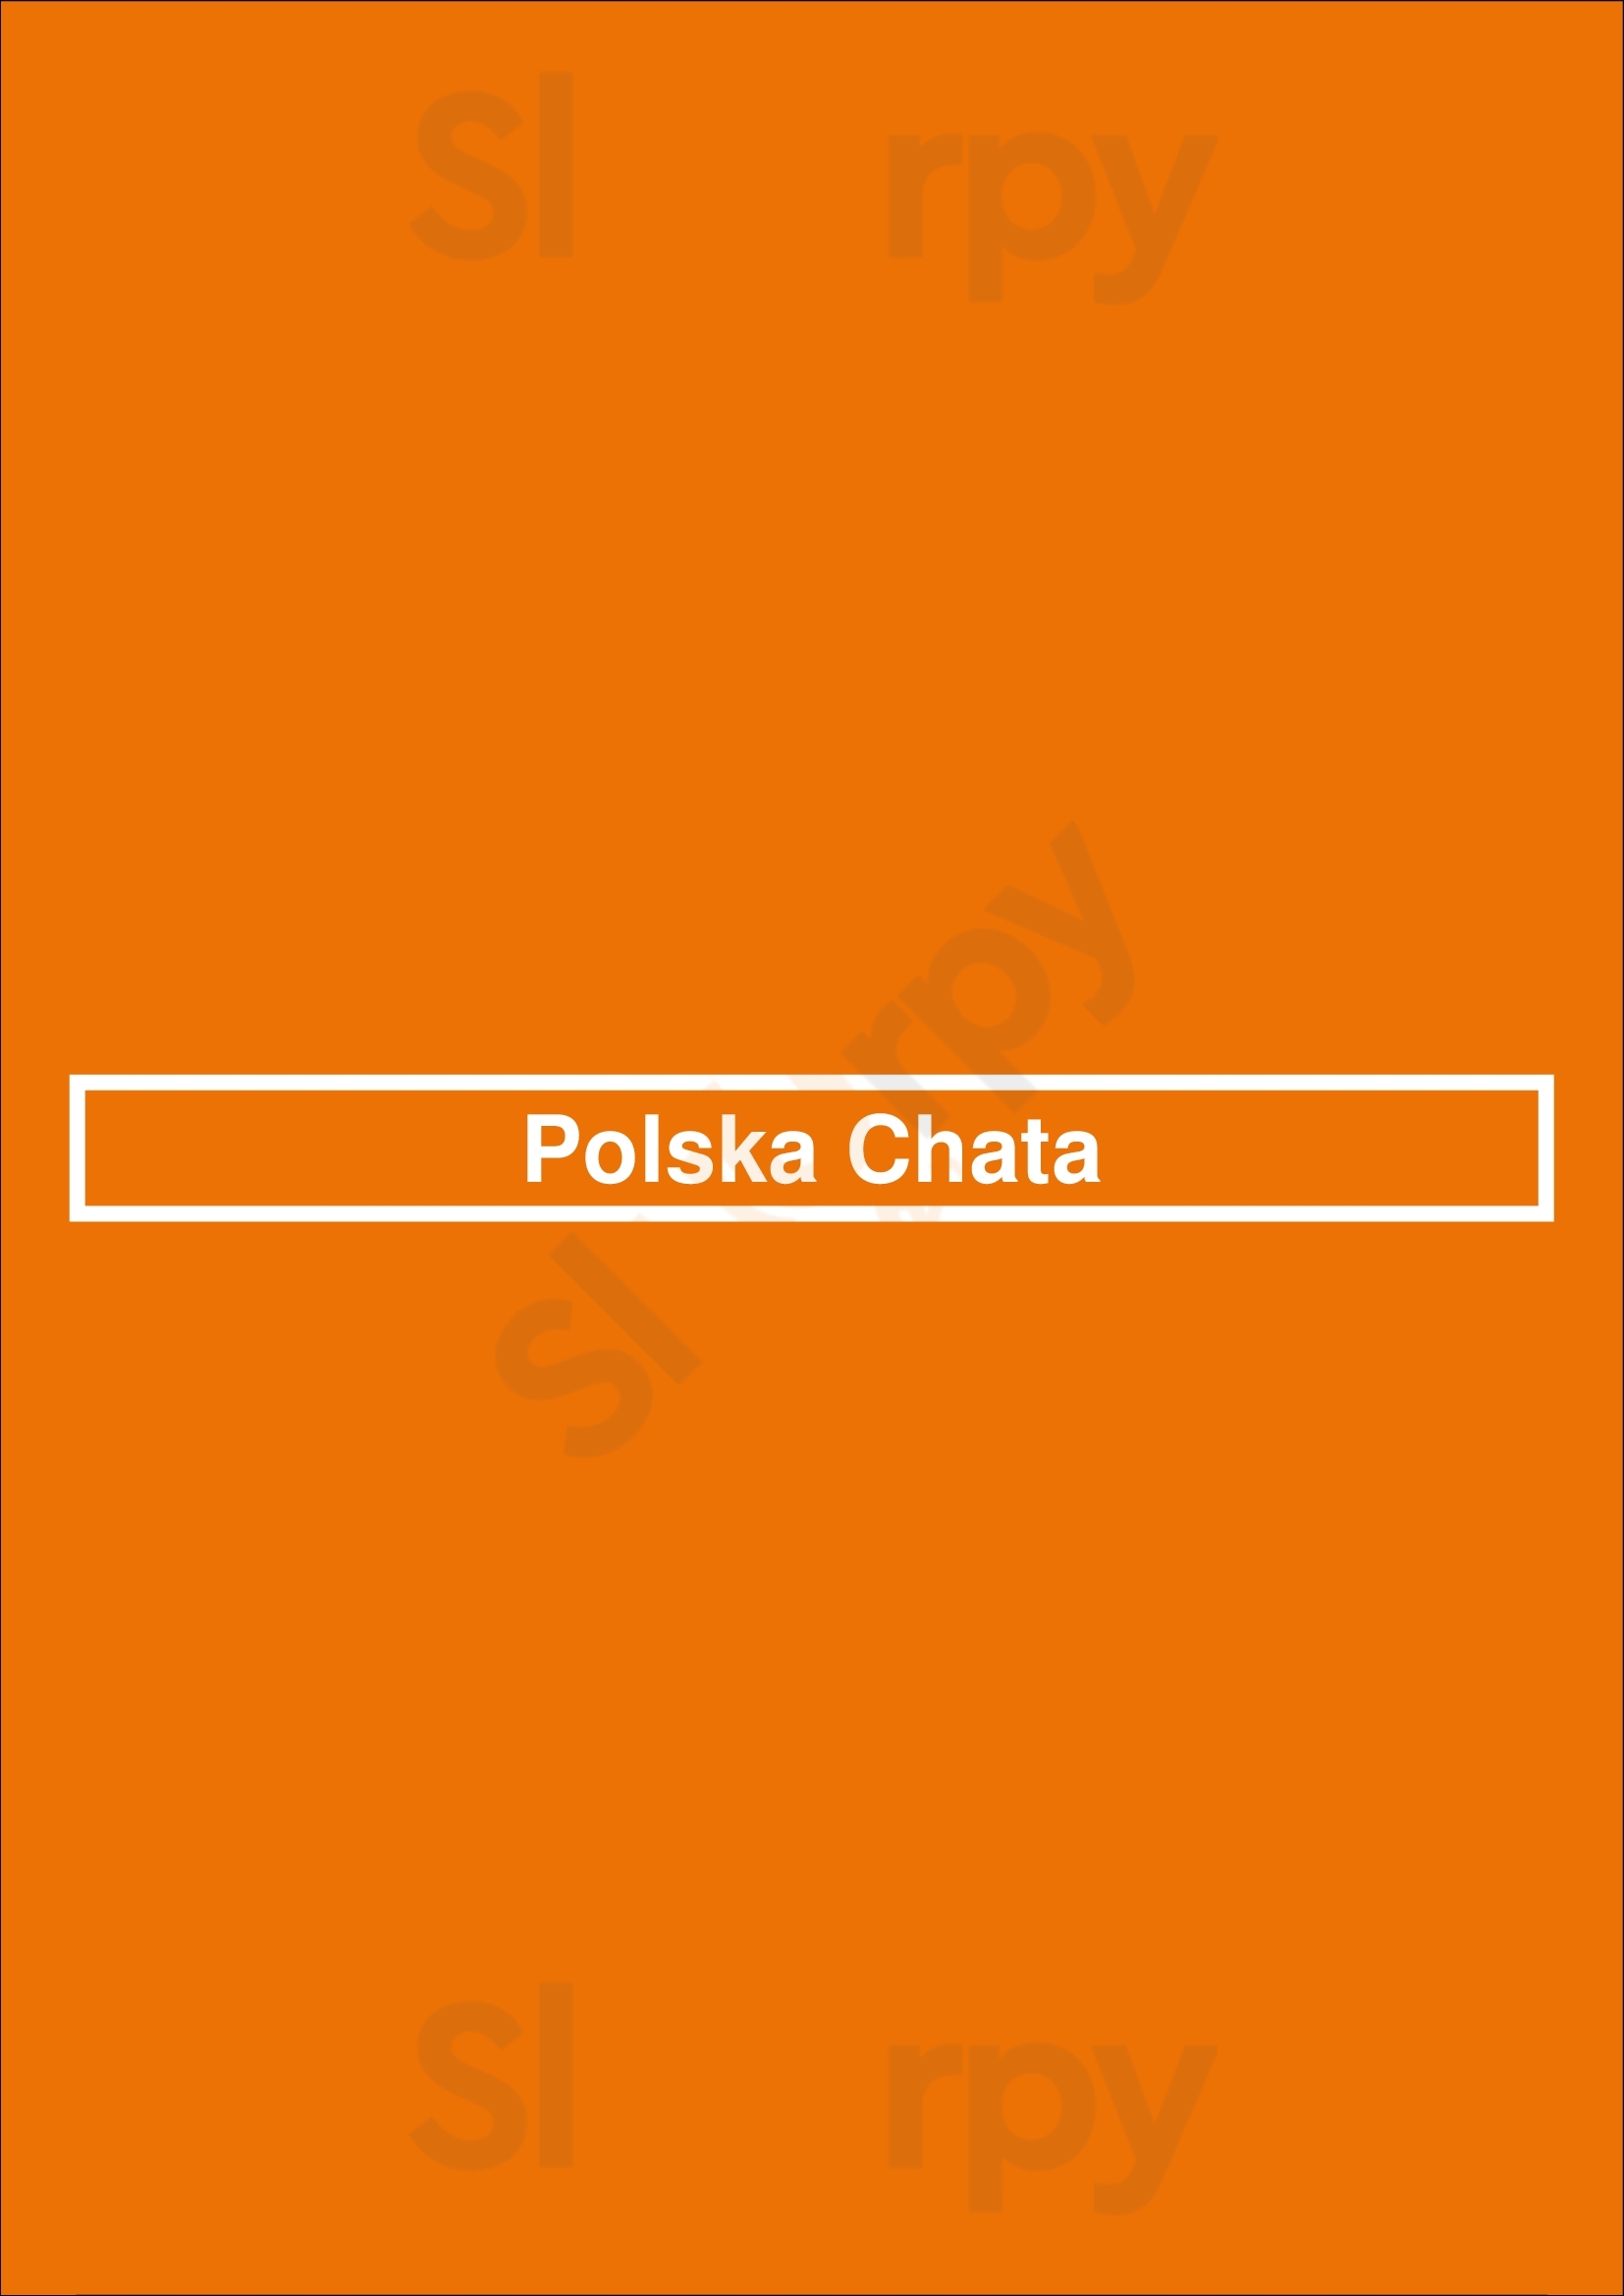 Polska Chata Rochester Menu - 1